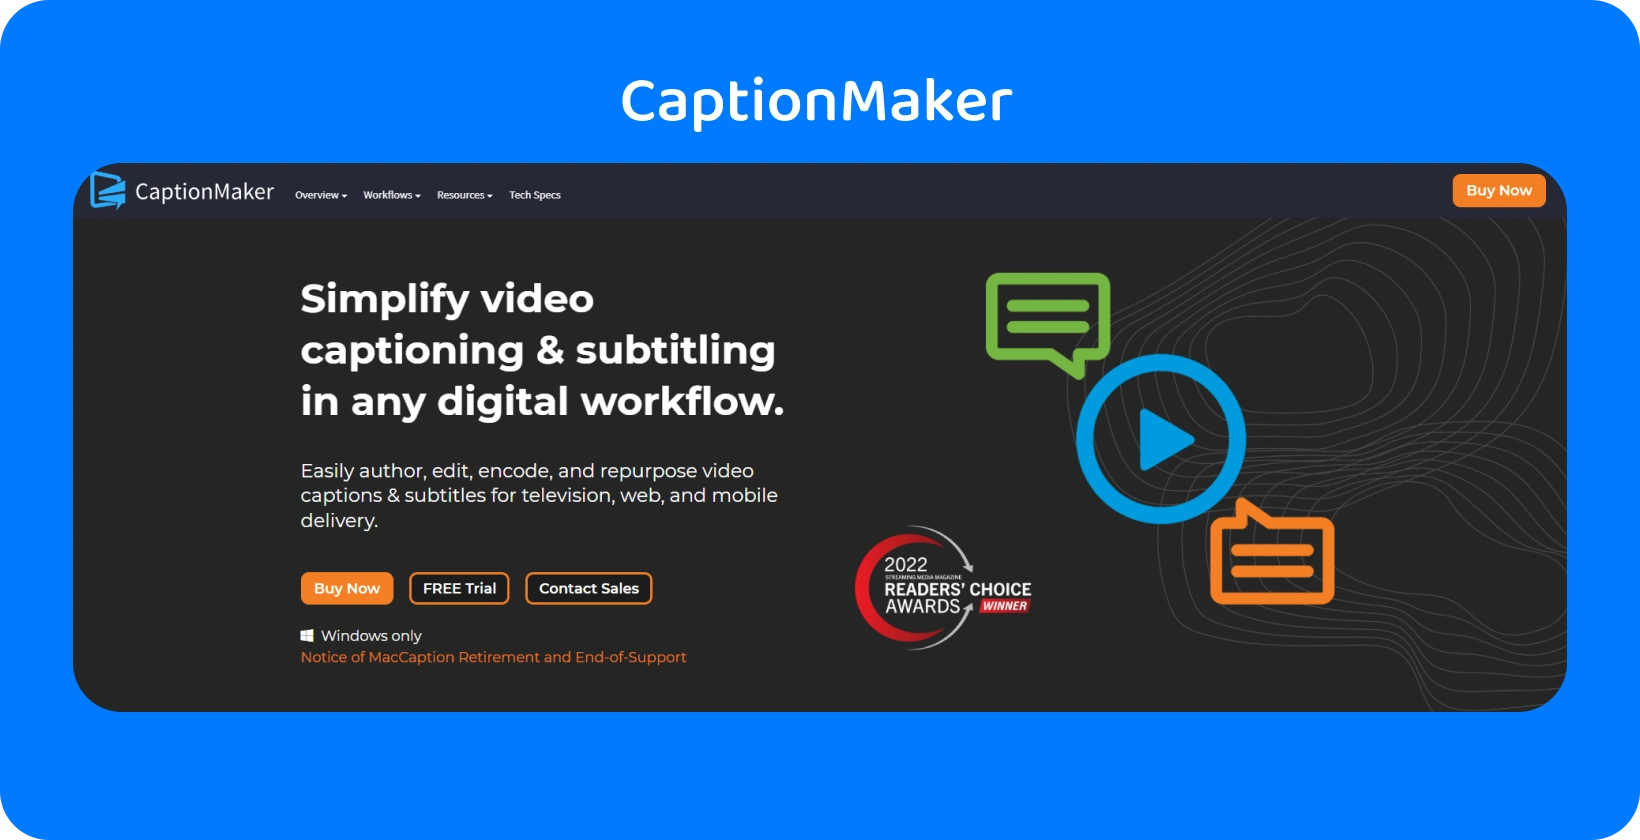 L'interfaccia di CaptionMaker per la sottotitolazione e la sottotitolazione dei video semplifica i flussi di lavoro digitali su tutti i dispositivi.